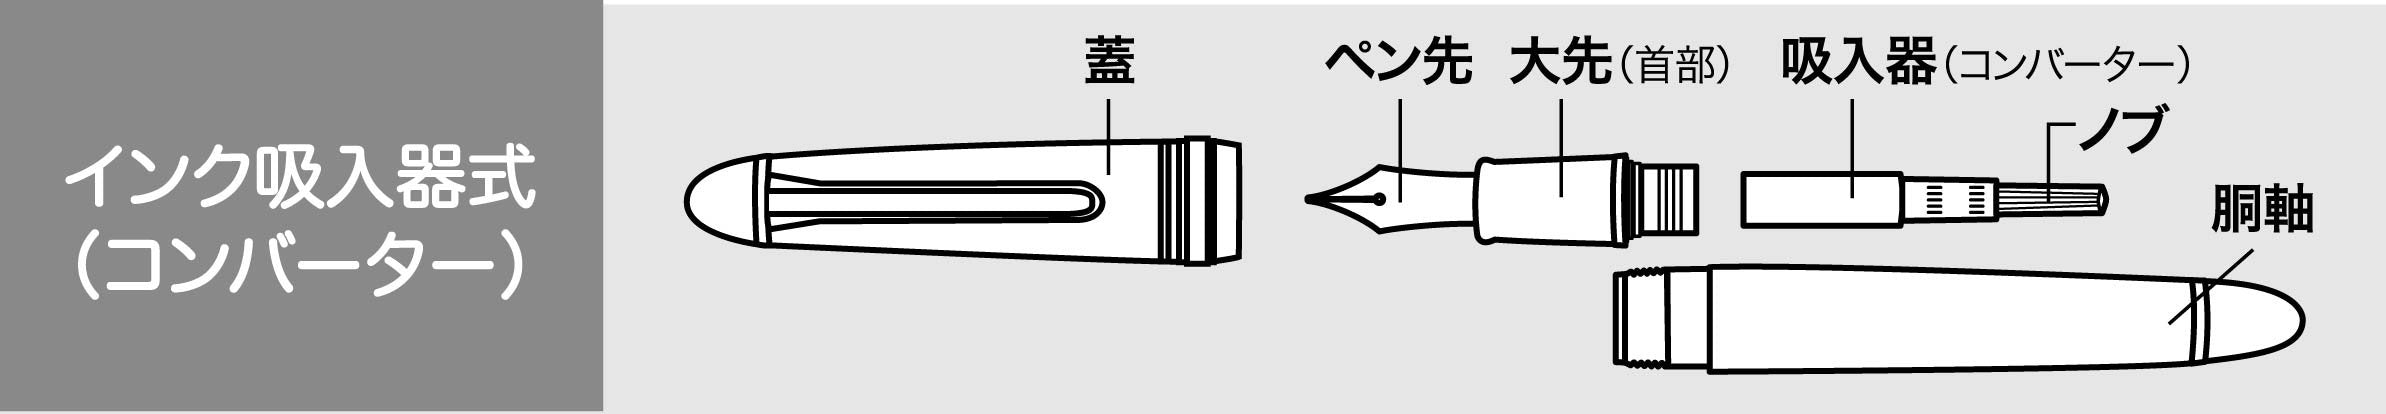 水手鋼筆搭配墨水吸入器轉換器黑色型號 14-0506-220